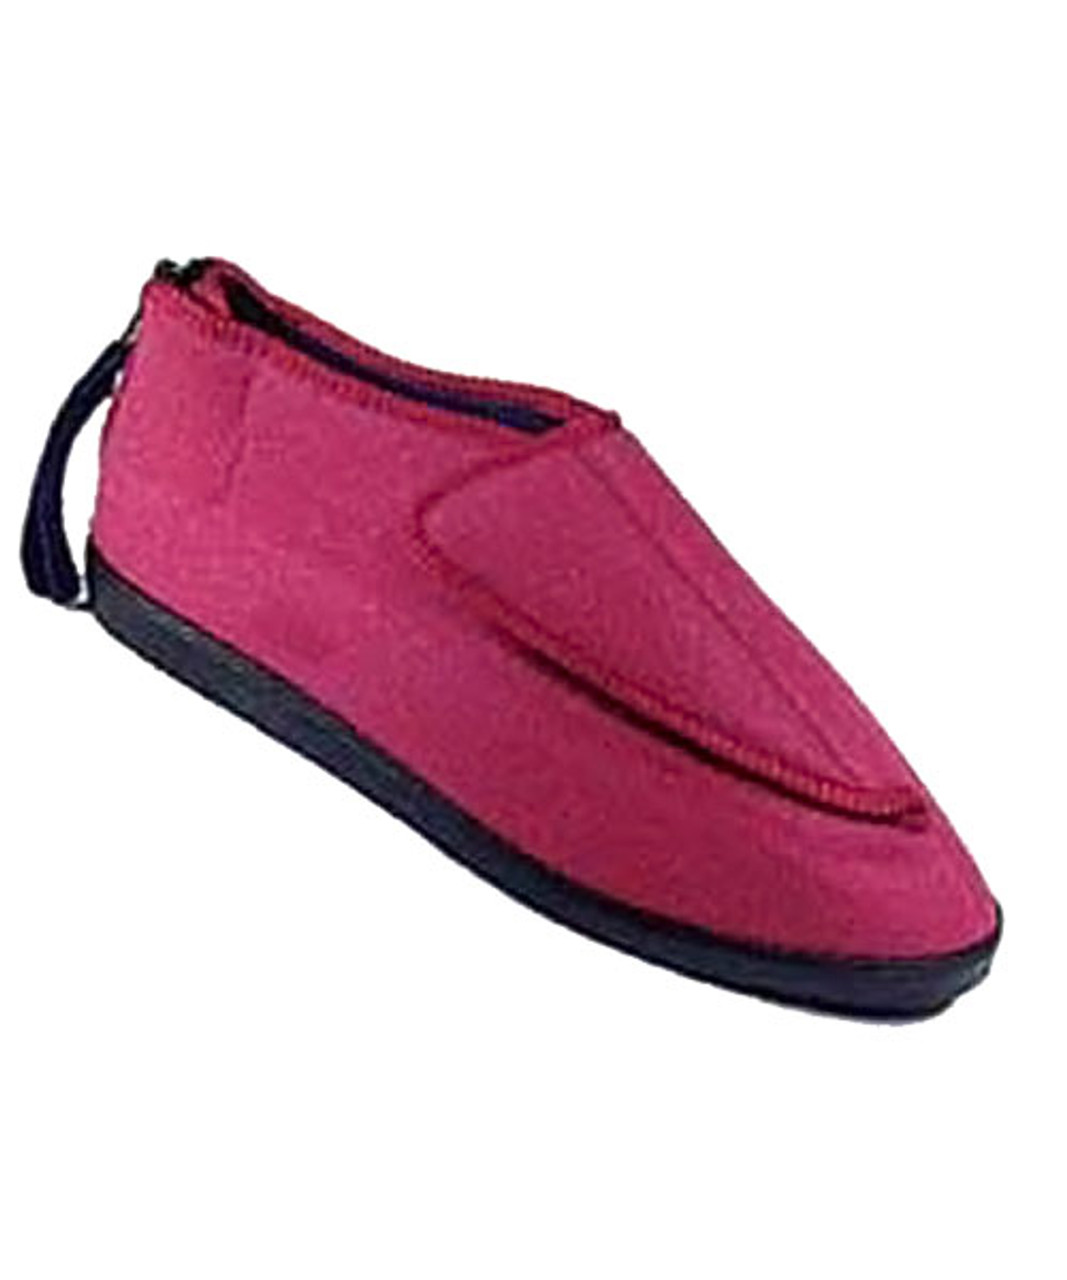 Silvert's 103000214 Adjustable Ezi Fit Slipper For Women, Size 12, PINK